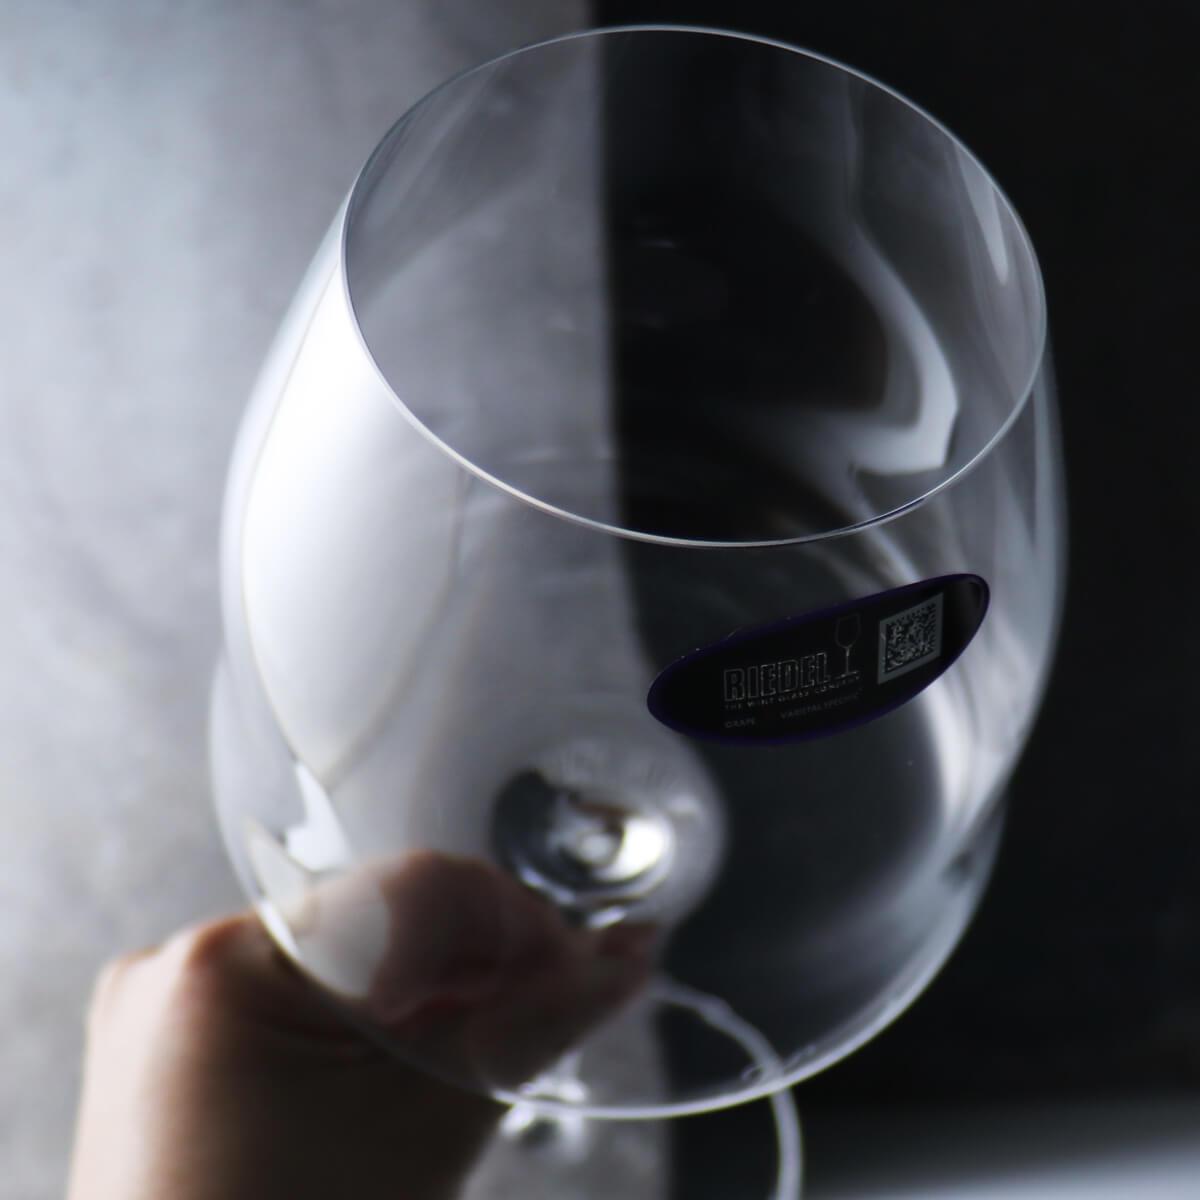 (一對價)950cc【Riedel 紅酒杯 醒酒杯】Winewings Pinot Noir黑皮諾紅酒杯 - MSA玻璃雕刻